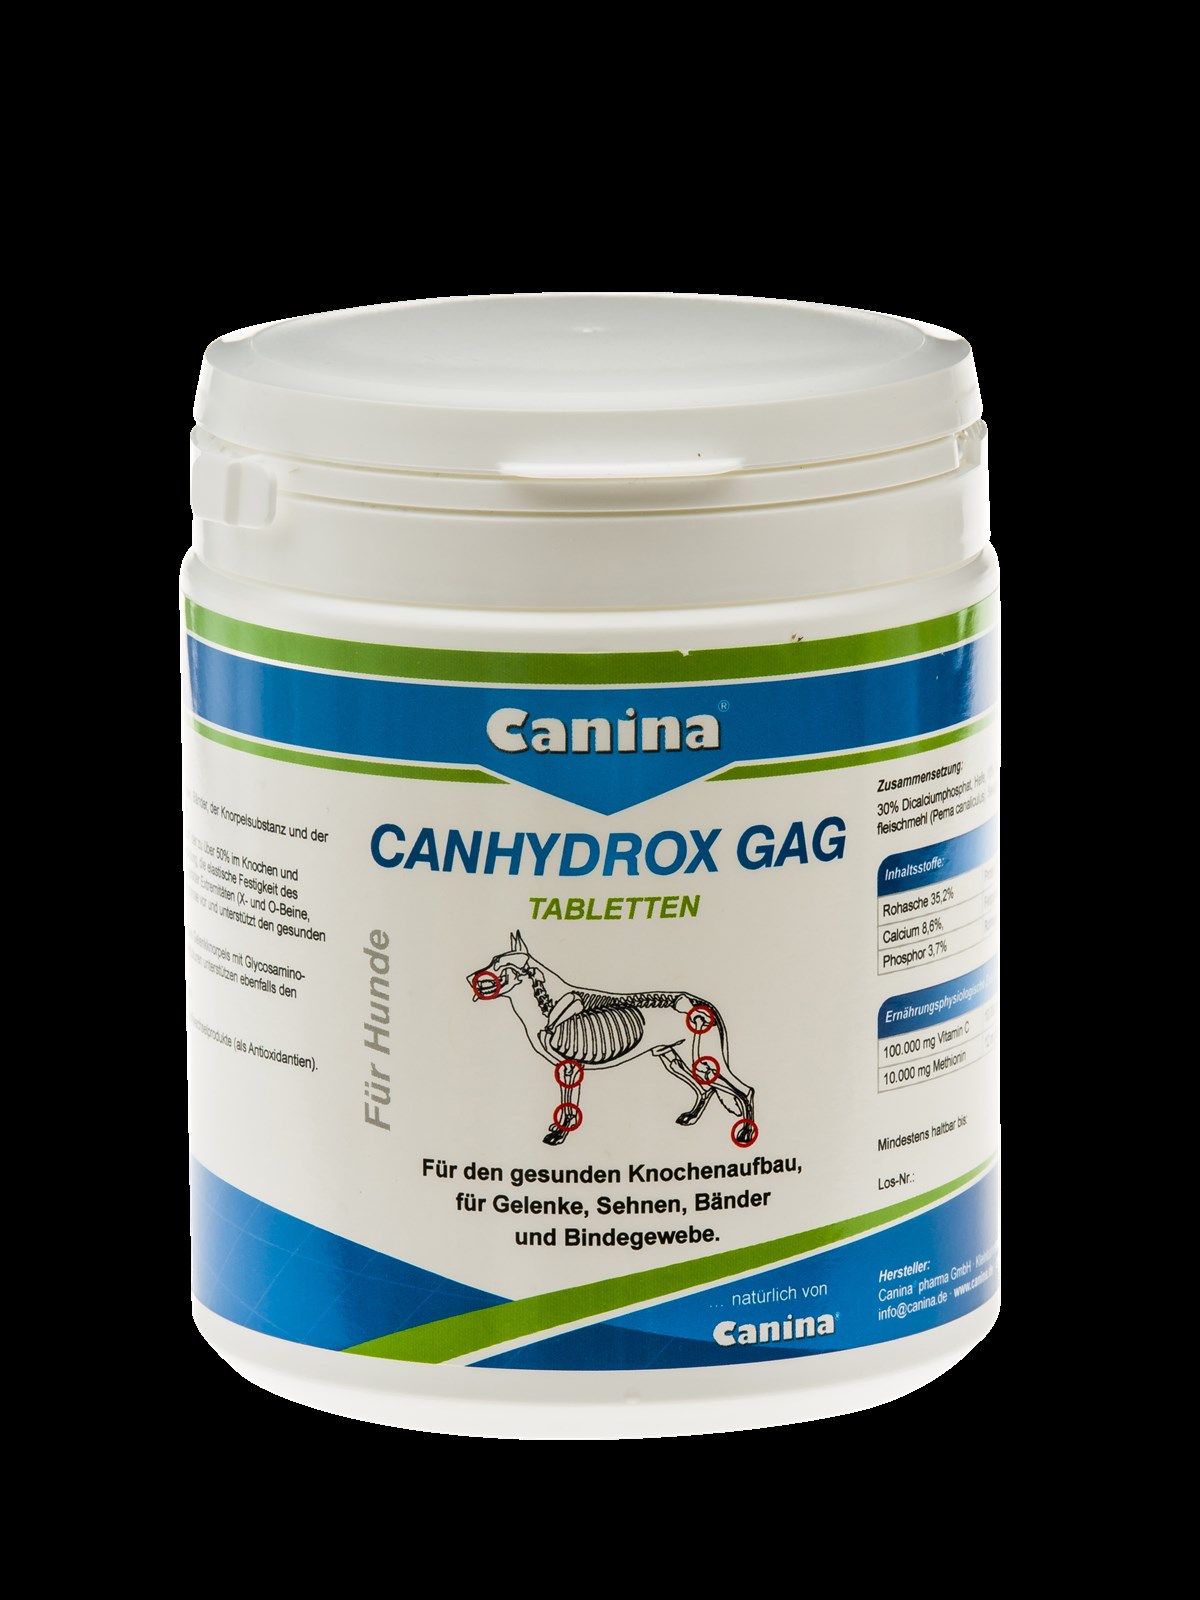 CANHYDROX GAG canina canhydrox gag, canina canhydrox gag fiyat, canina,  evcil hayvan gıda takviyesi, canhydrox gag, canhydrox ne işe yarar, canina  pharma gmbh, canina pharma canhydrox gag, köpeklere takviye, canina  canhydrox gag